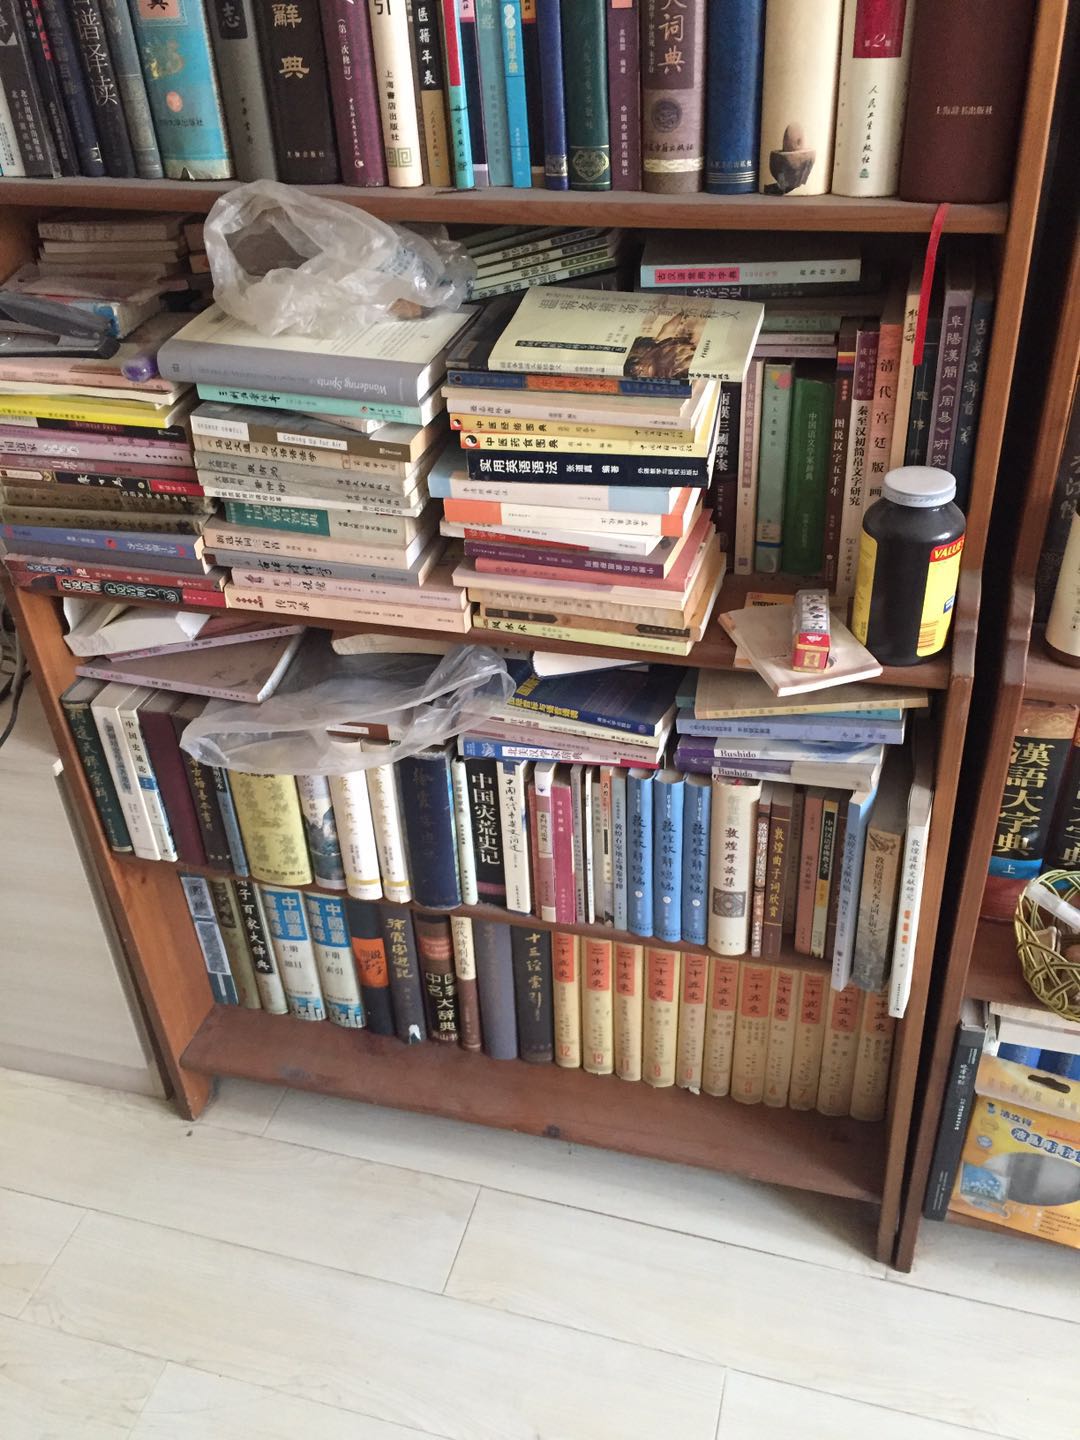 北京 朝阳区 建外 搬家 二手书 学术书 大部头 藏书   北京 收购旧书 上门回收图书旧书回收平台